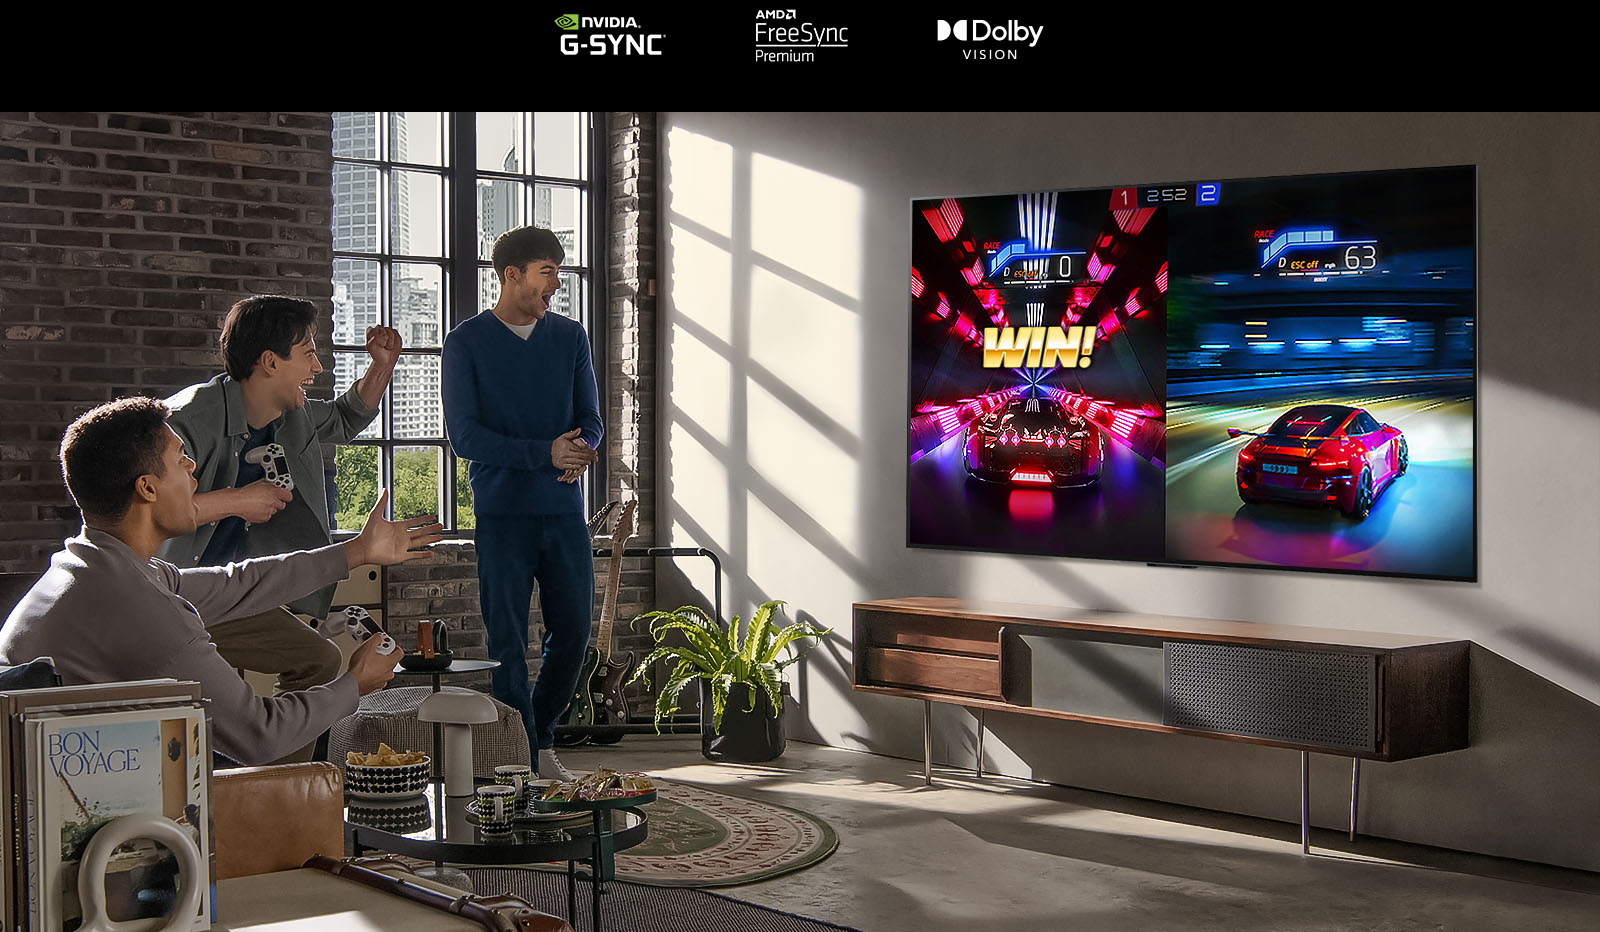 صورة لثلاثة أشخاص يعلبون لعبة سباق على شاشة تلفزيون LG OLED في شقة ذات تصميم عصري في المدينة.